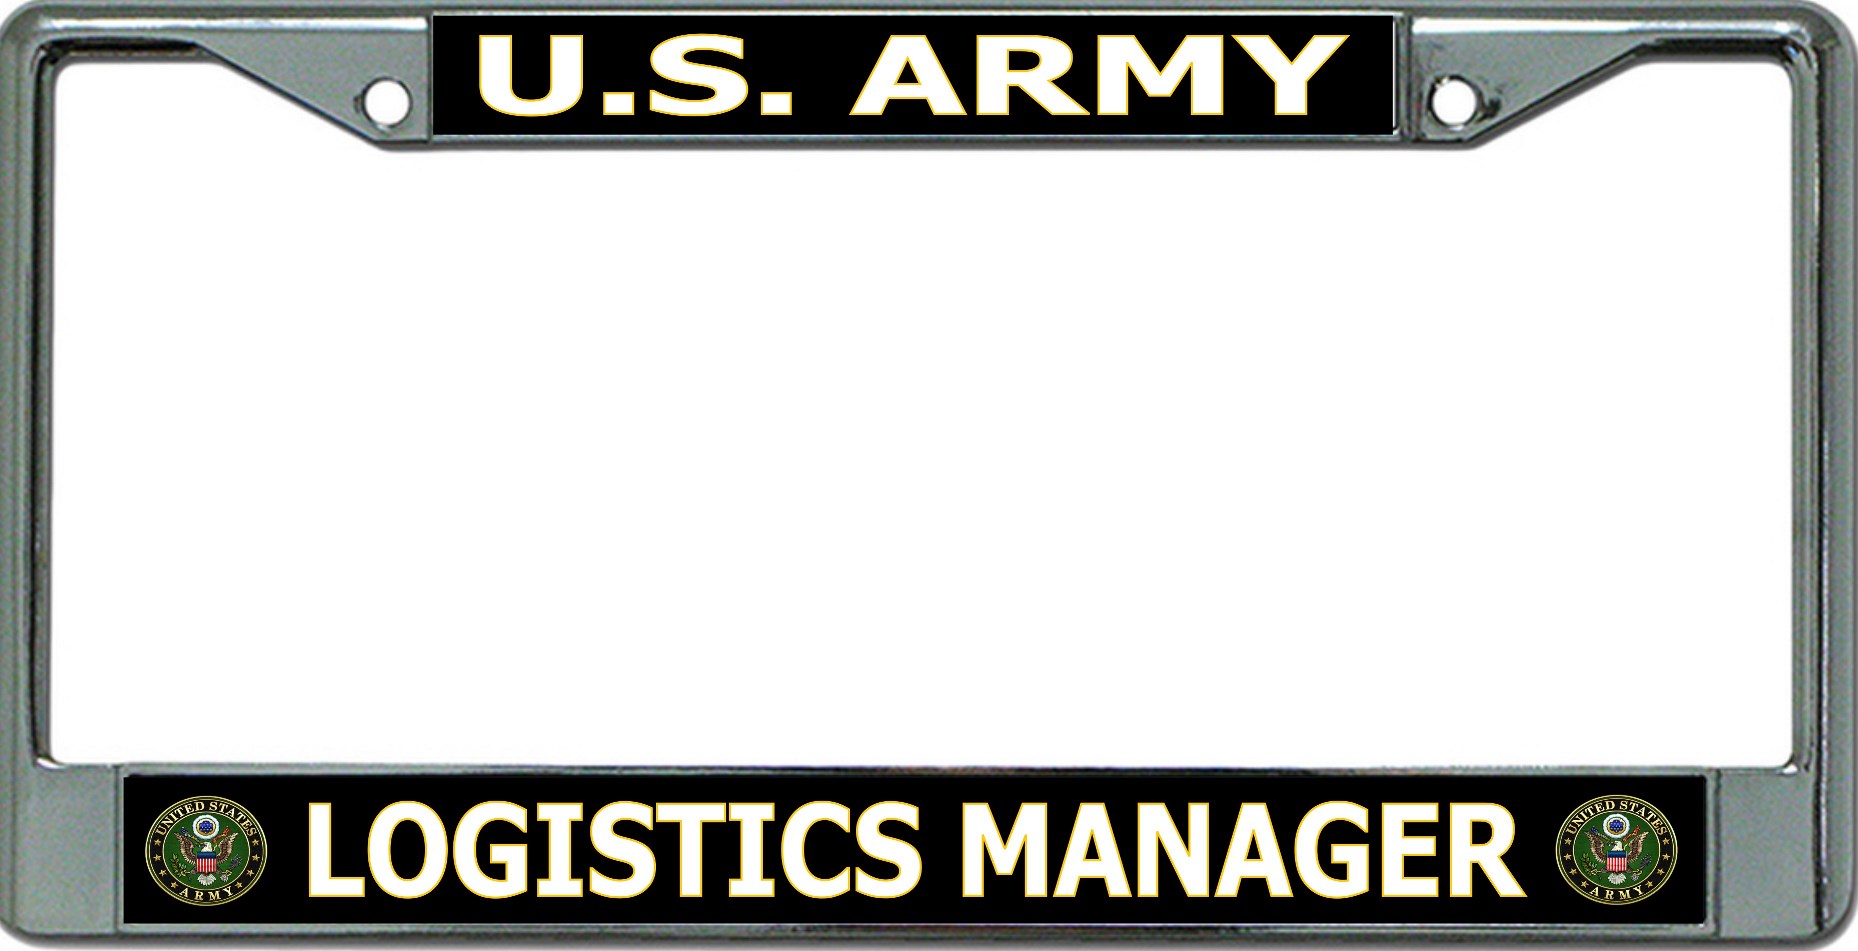 U.S. Army Logistics Manager Chrome License Plate FRAME